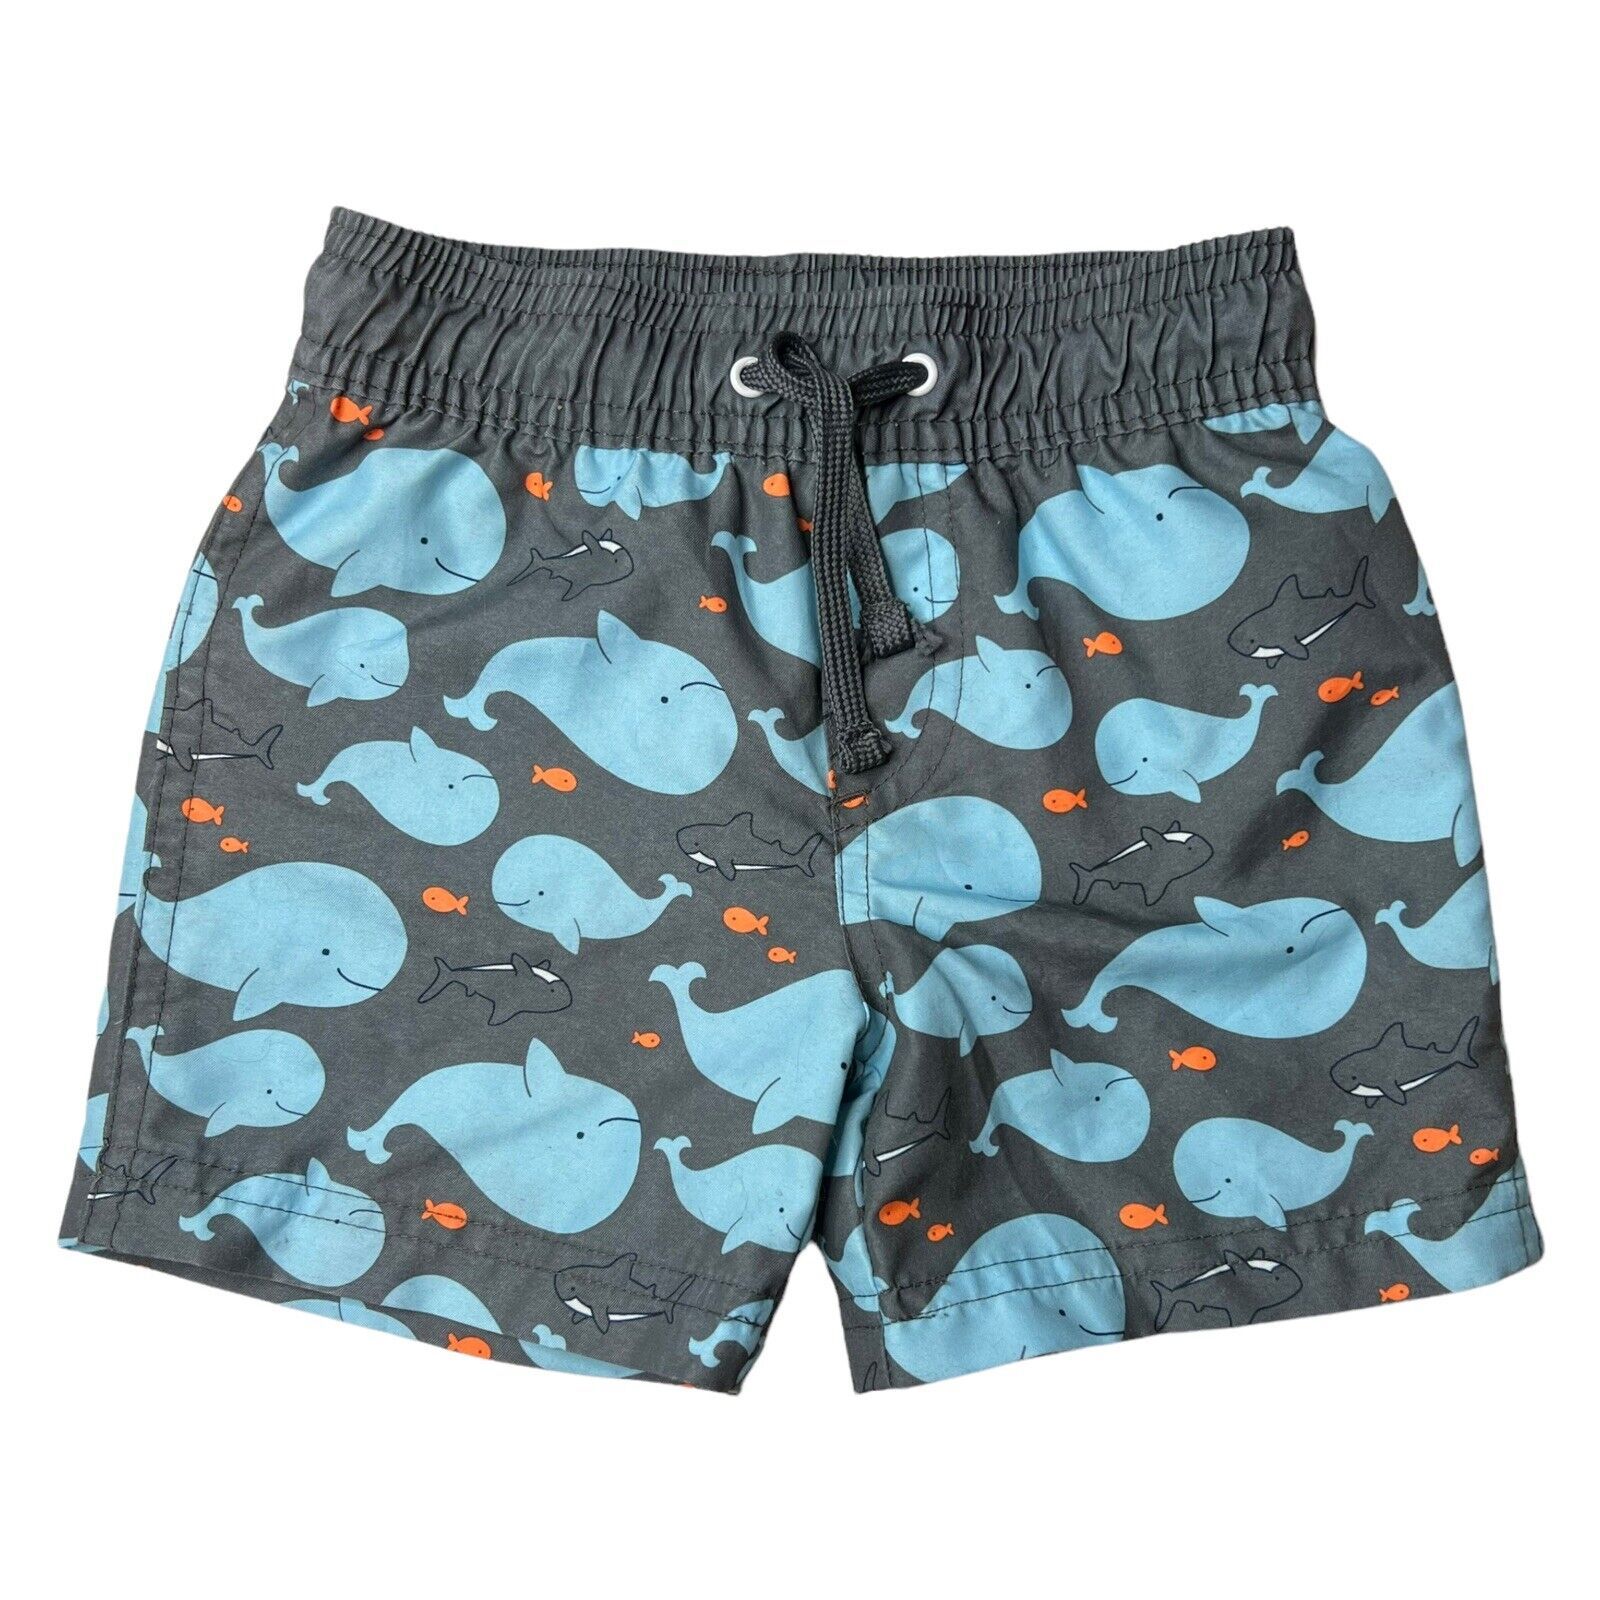 Simple Joys Whale Swim Shorts Size 24 Month - $9.75